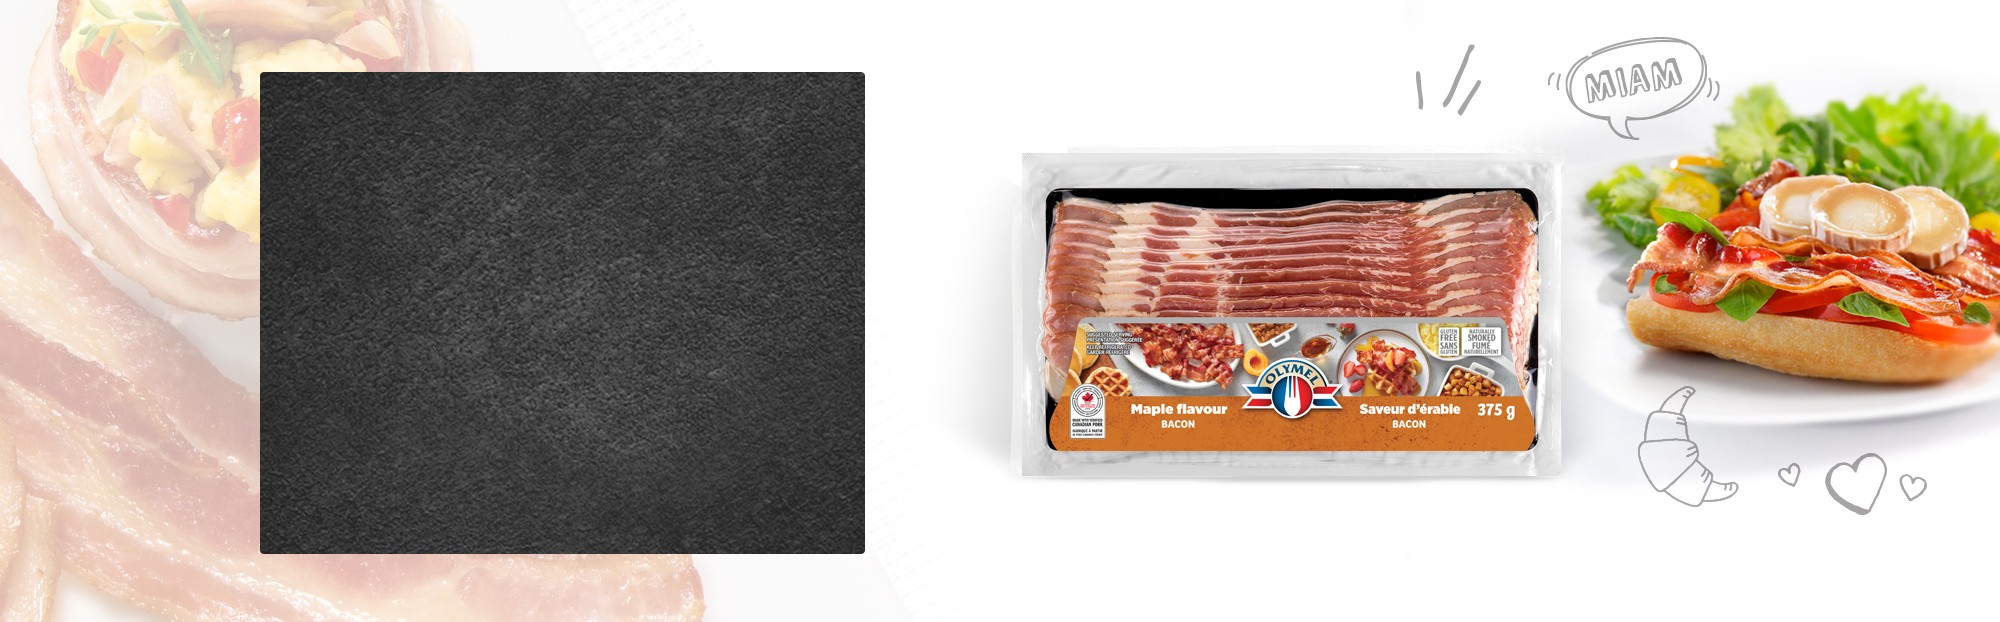 Bacon fumé naturellement à saveur d'érable